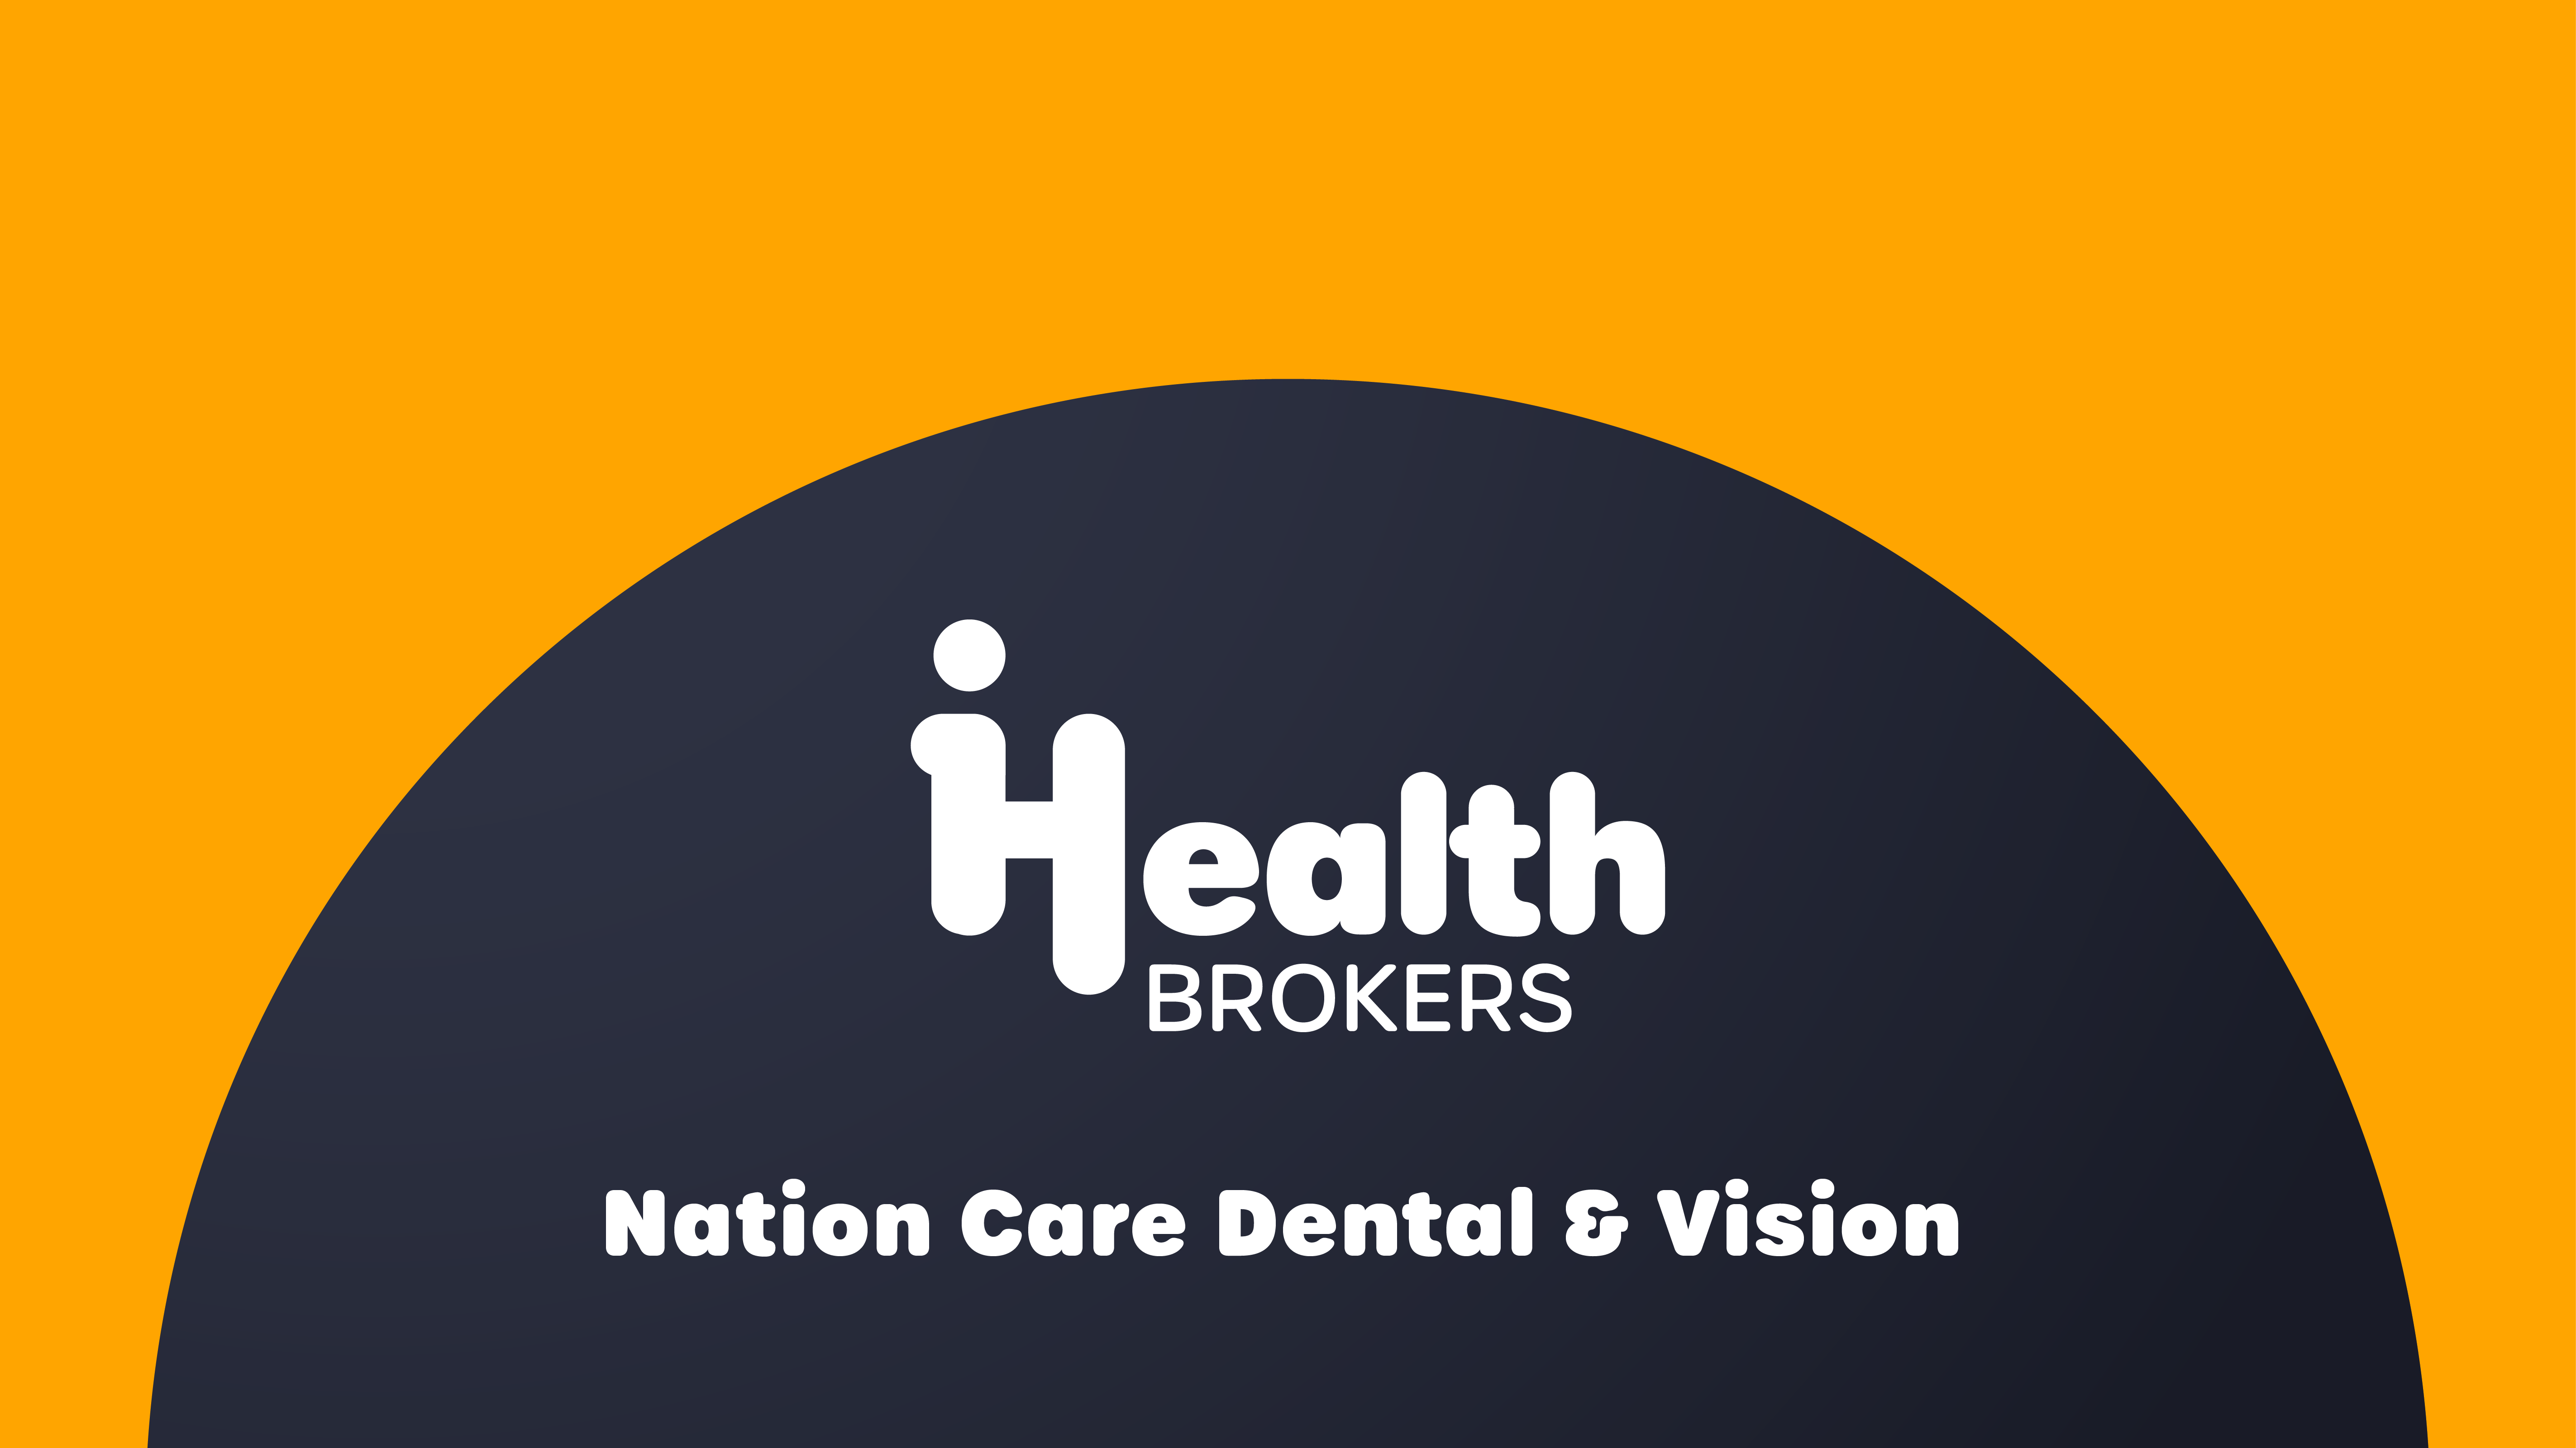 National Care Dental Vision Plans